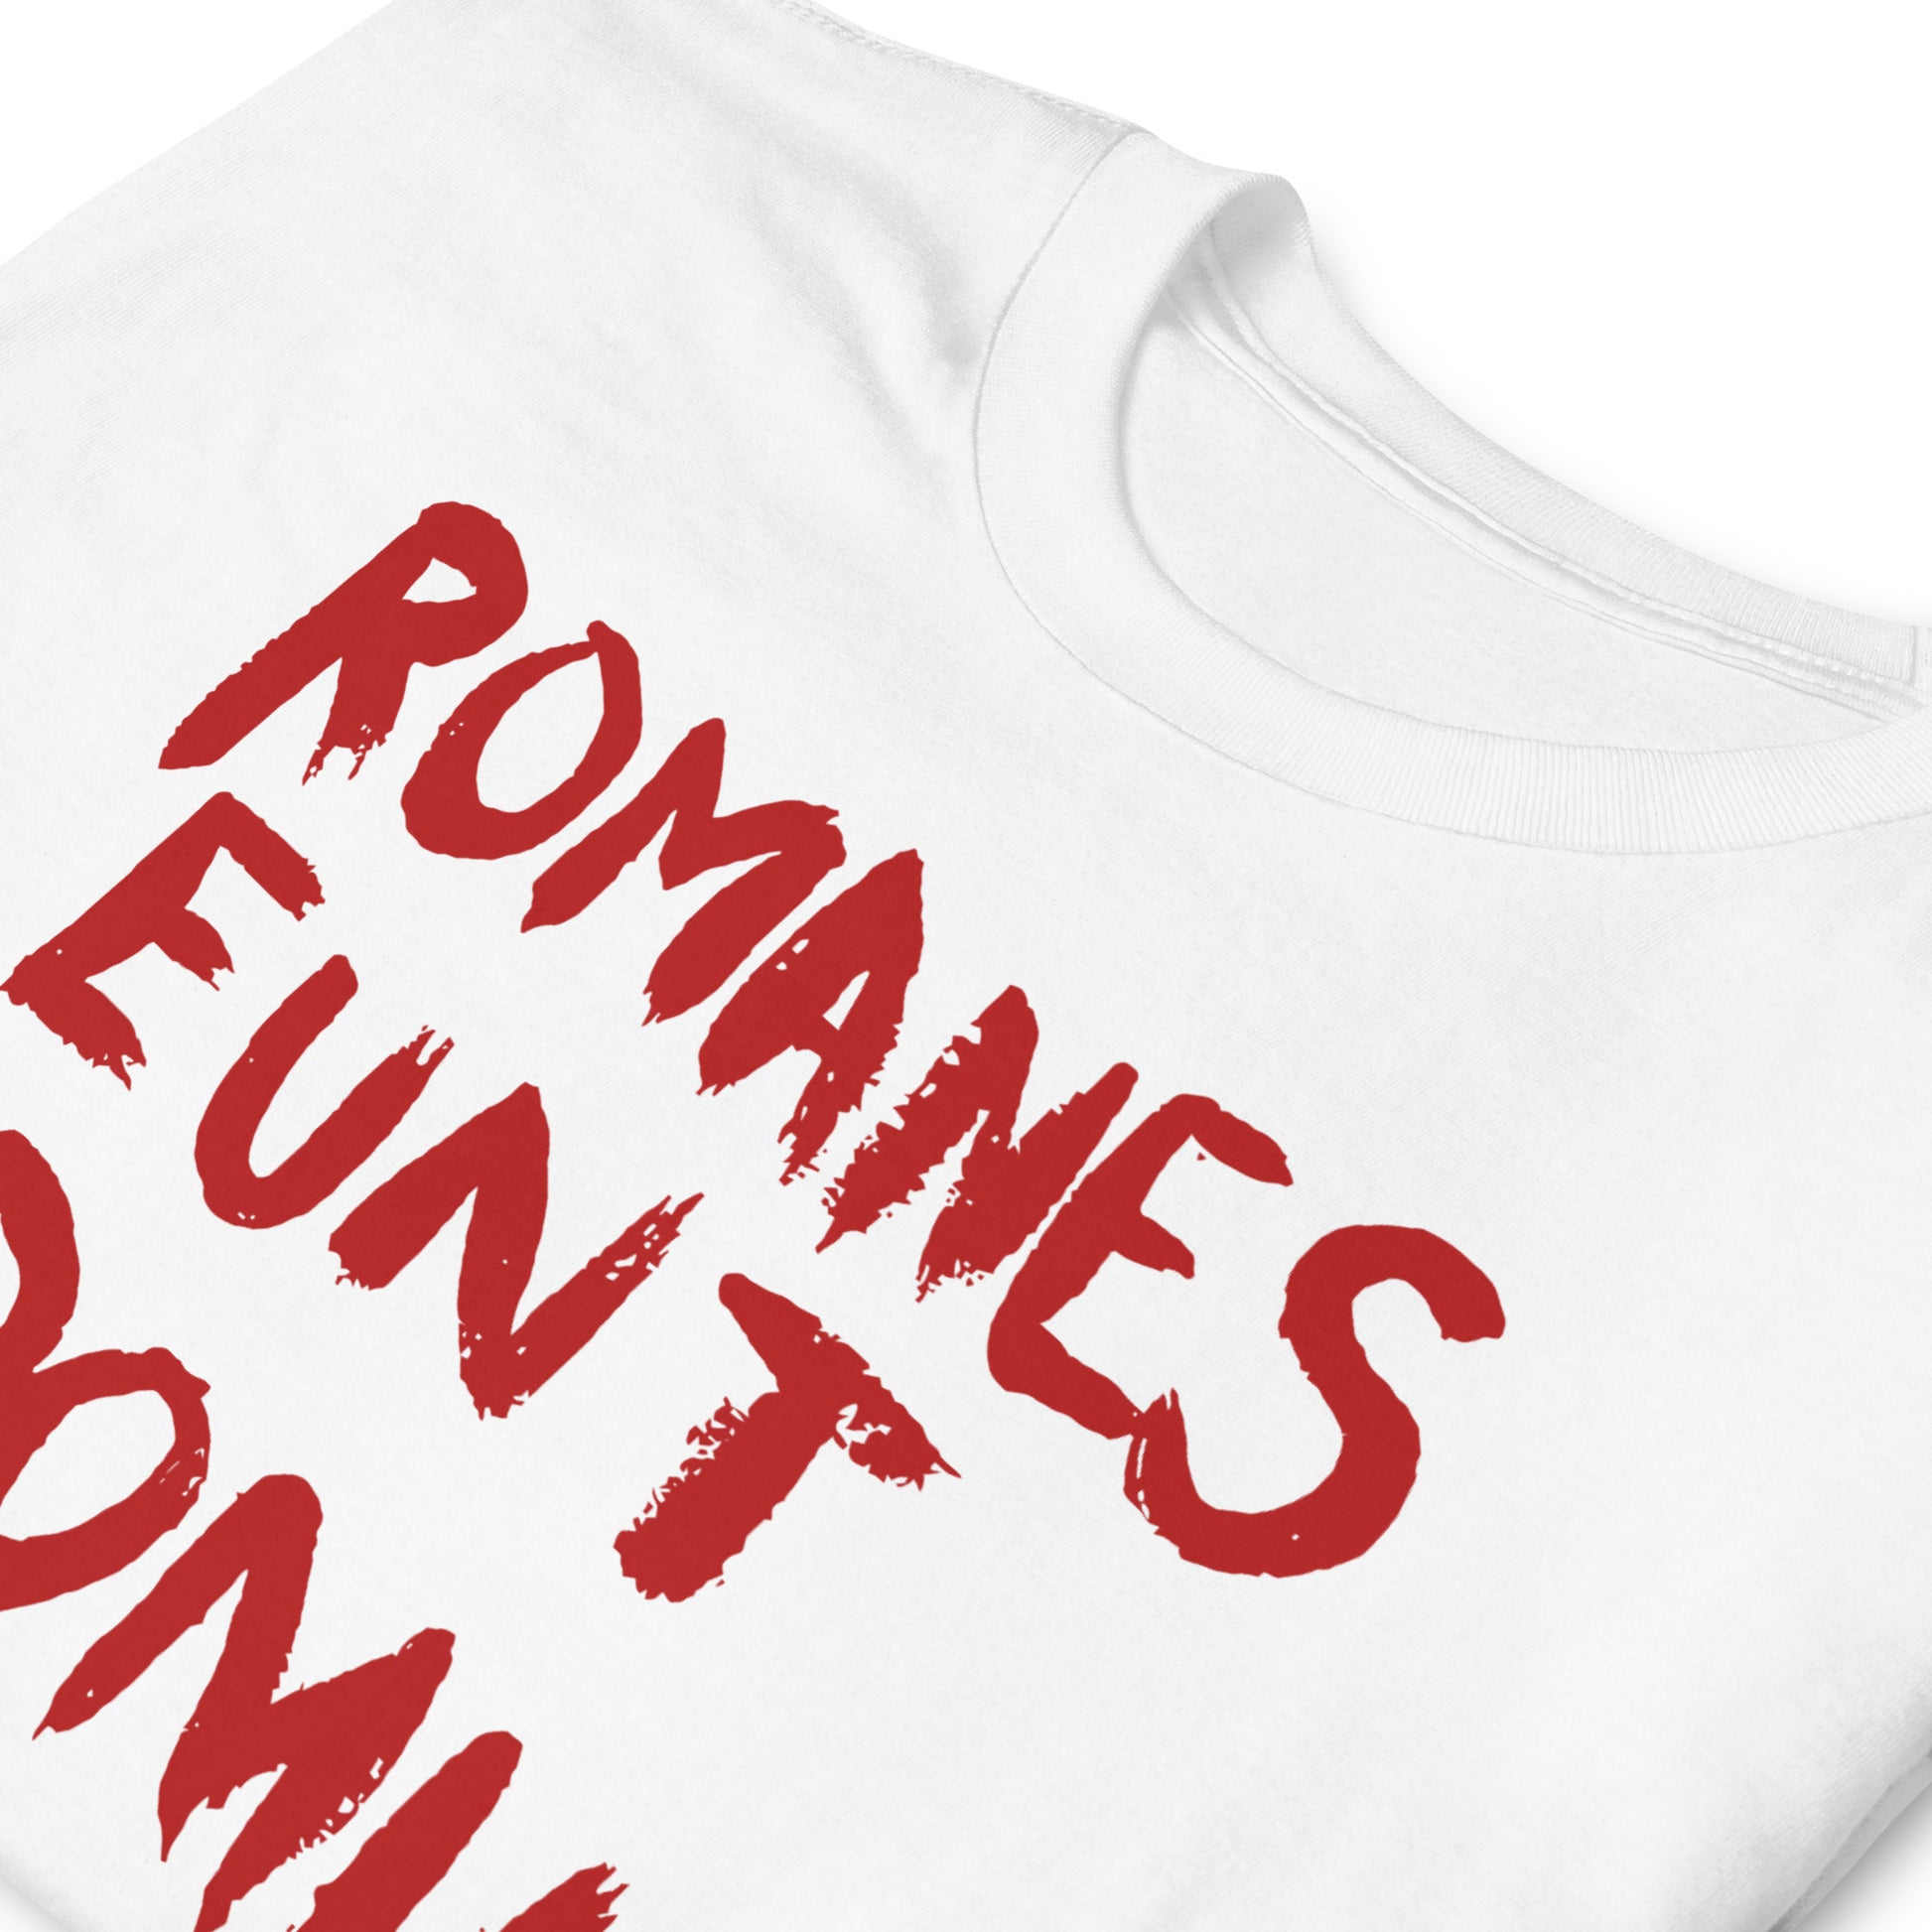 Camiseta Romanes Eunt Domus